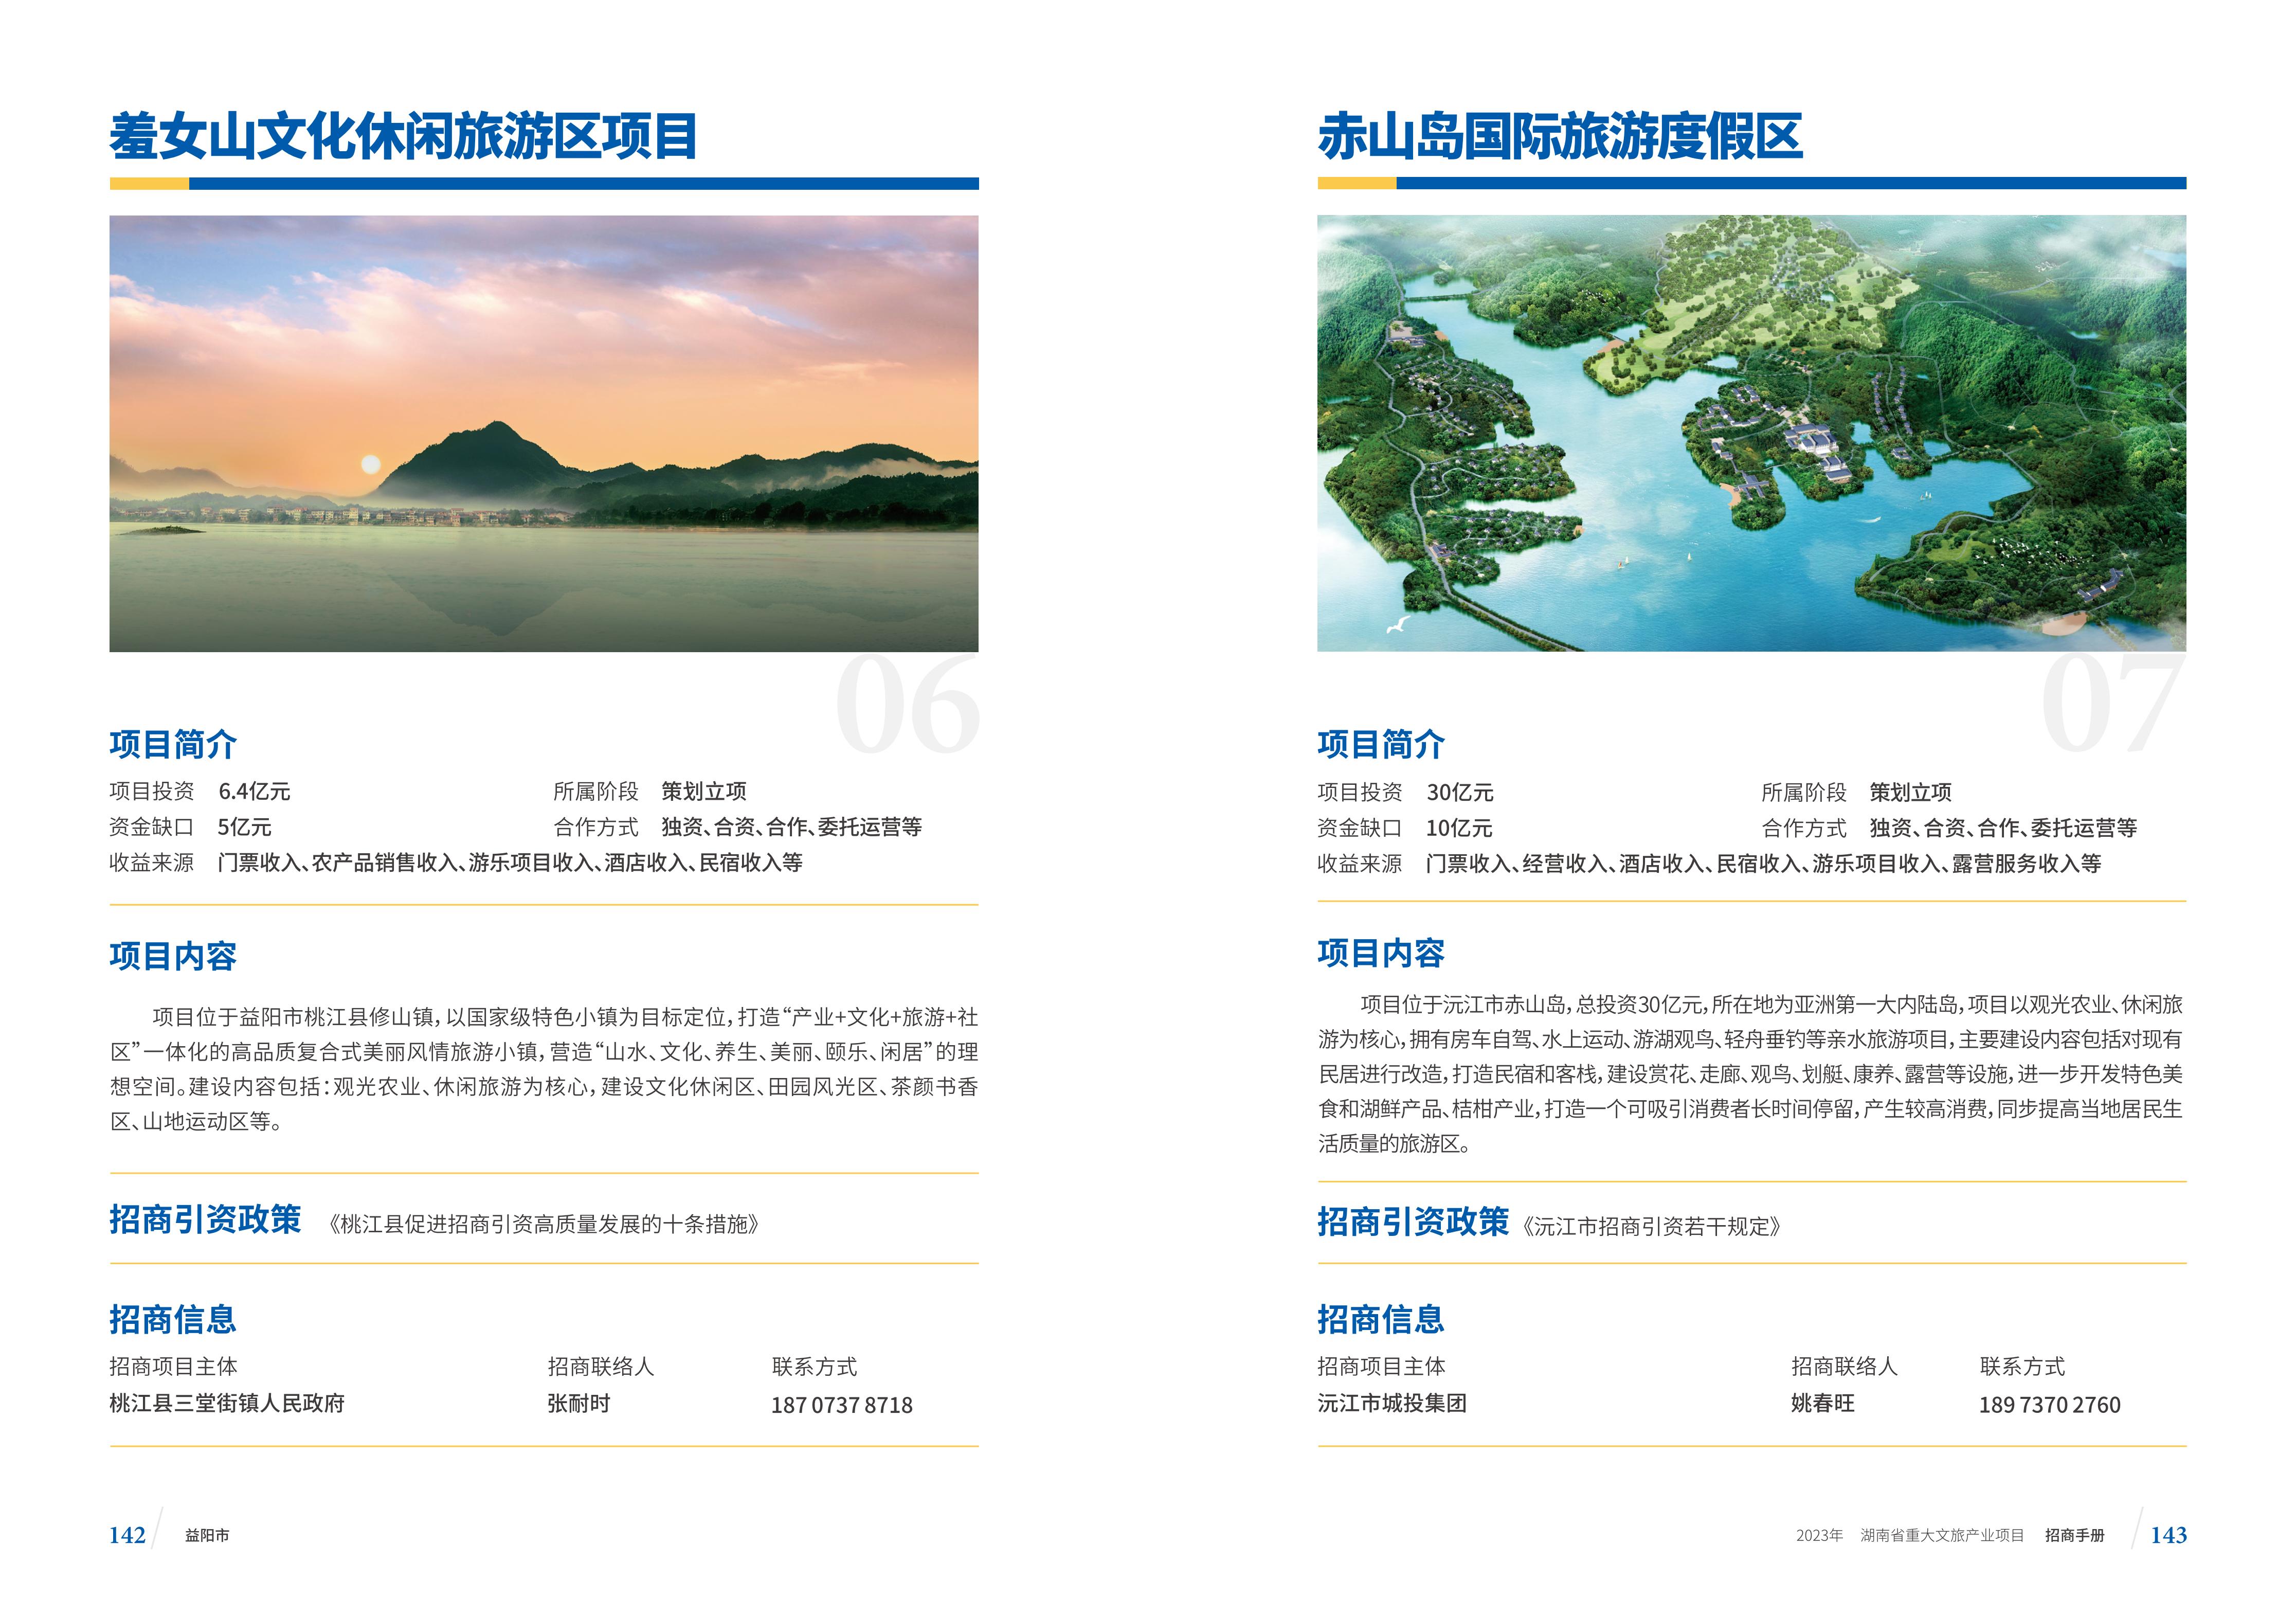 湖南省重大文旅产业项目招手册线上链接版_79.jpg